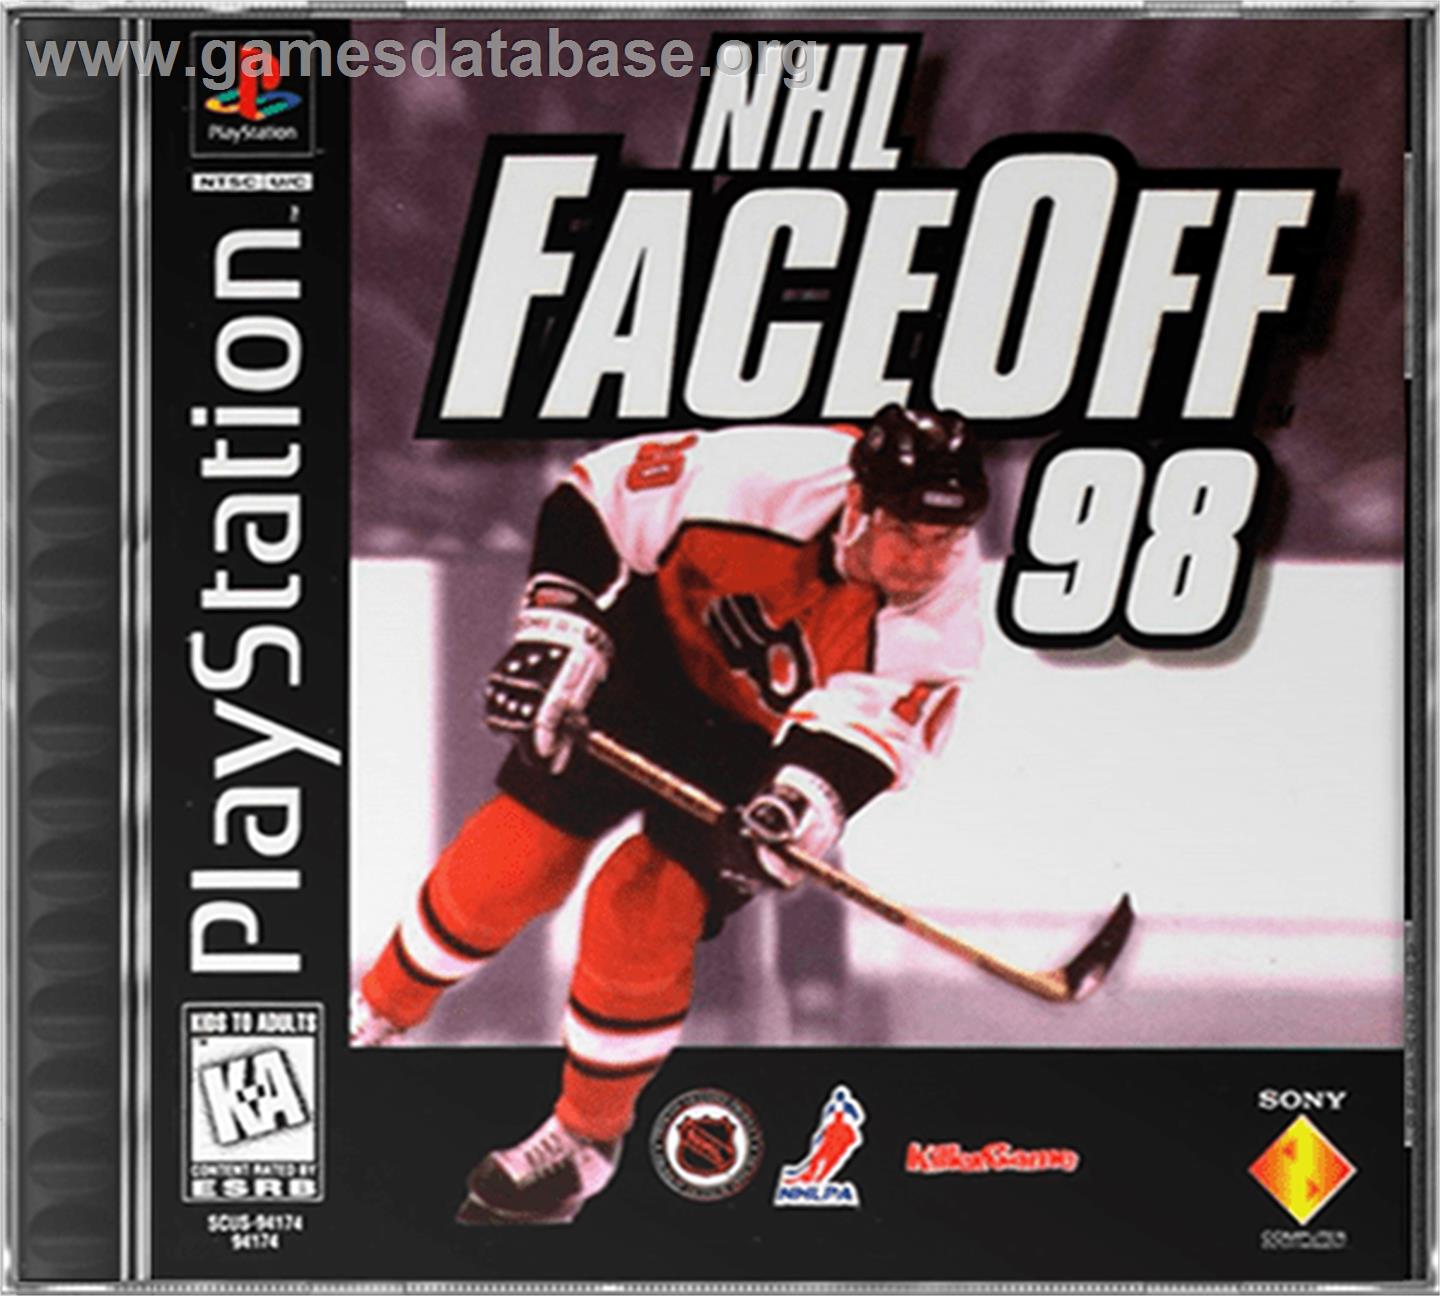 NHL FaceOff '98 - Sony Playstation - Artwork - Box